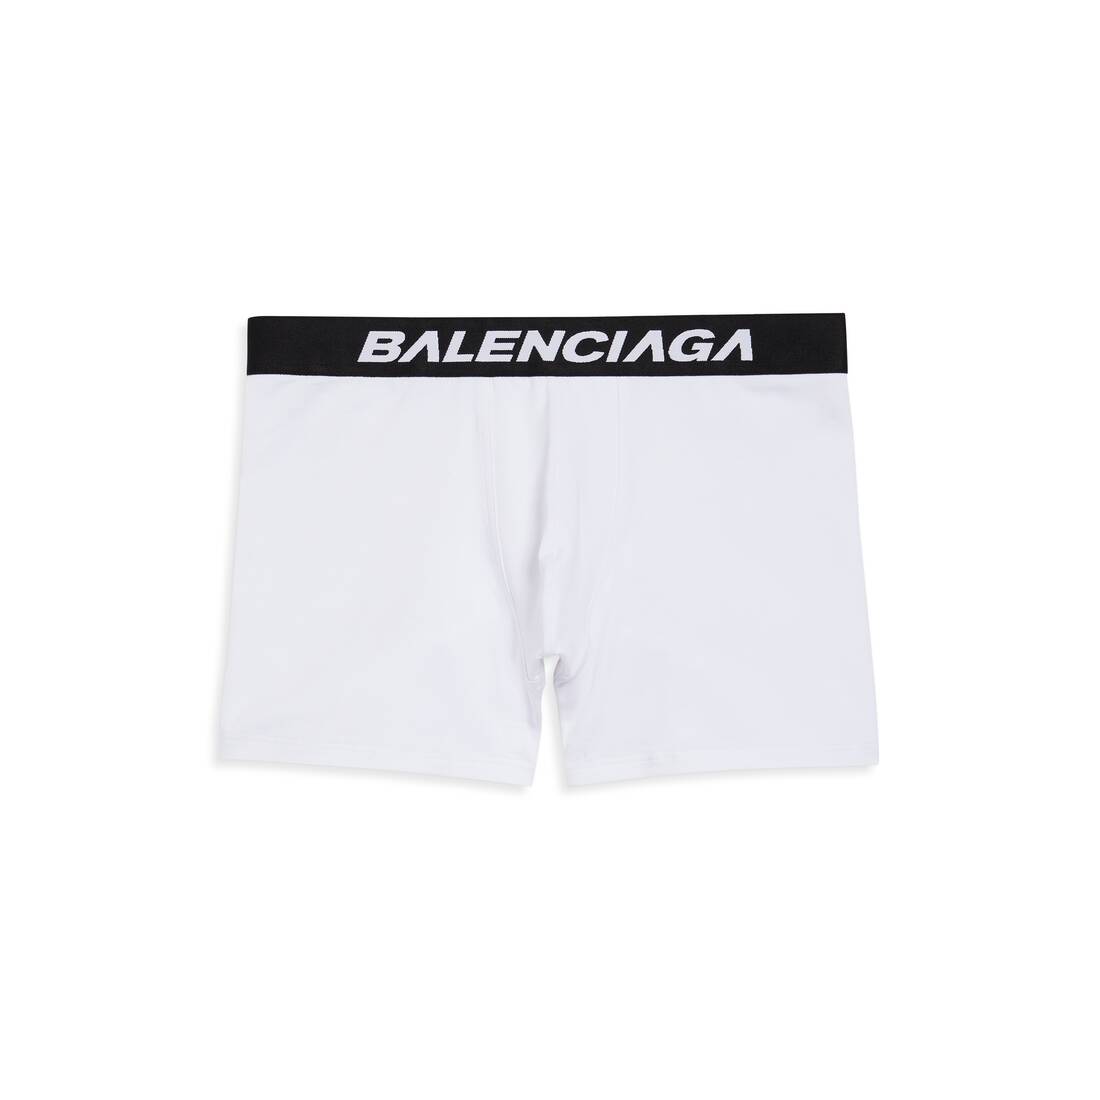 Kilde Eve ufuldstændig Men's Racer Boxer Briefs in White/black | Balenciaga US